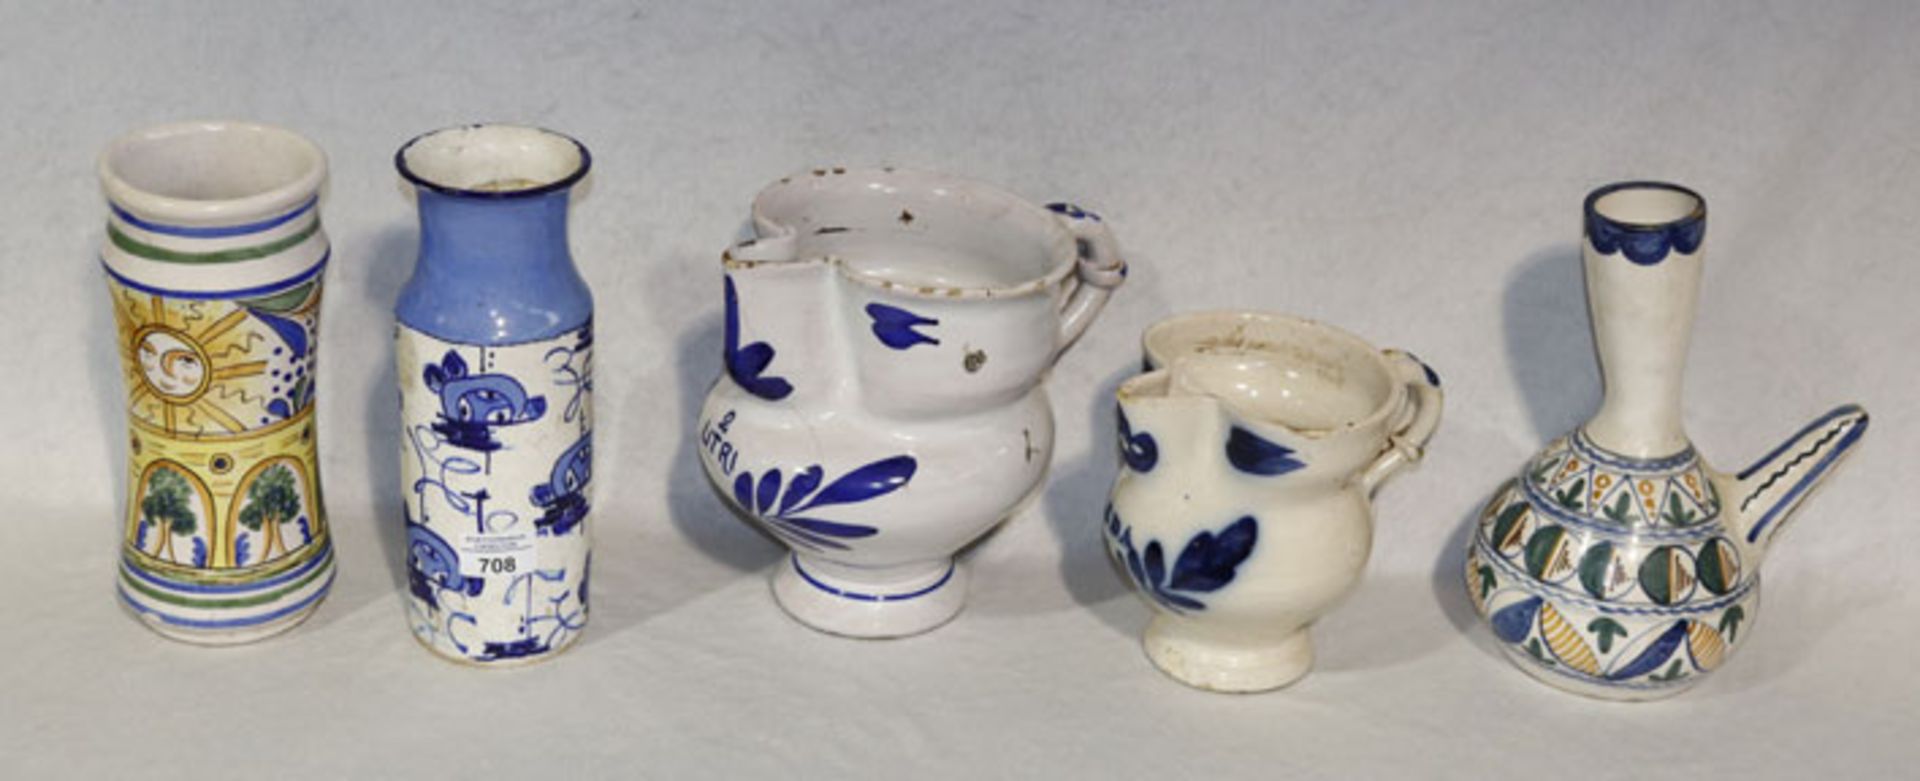 Konvolut von Keramik Vasen, H 24/25 cm. 2 Henkelkrüge mit blauem Dekor, 1 und 2 Liter, H 16/20 cm,